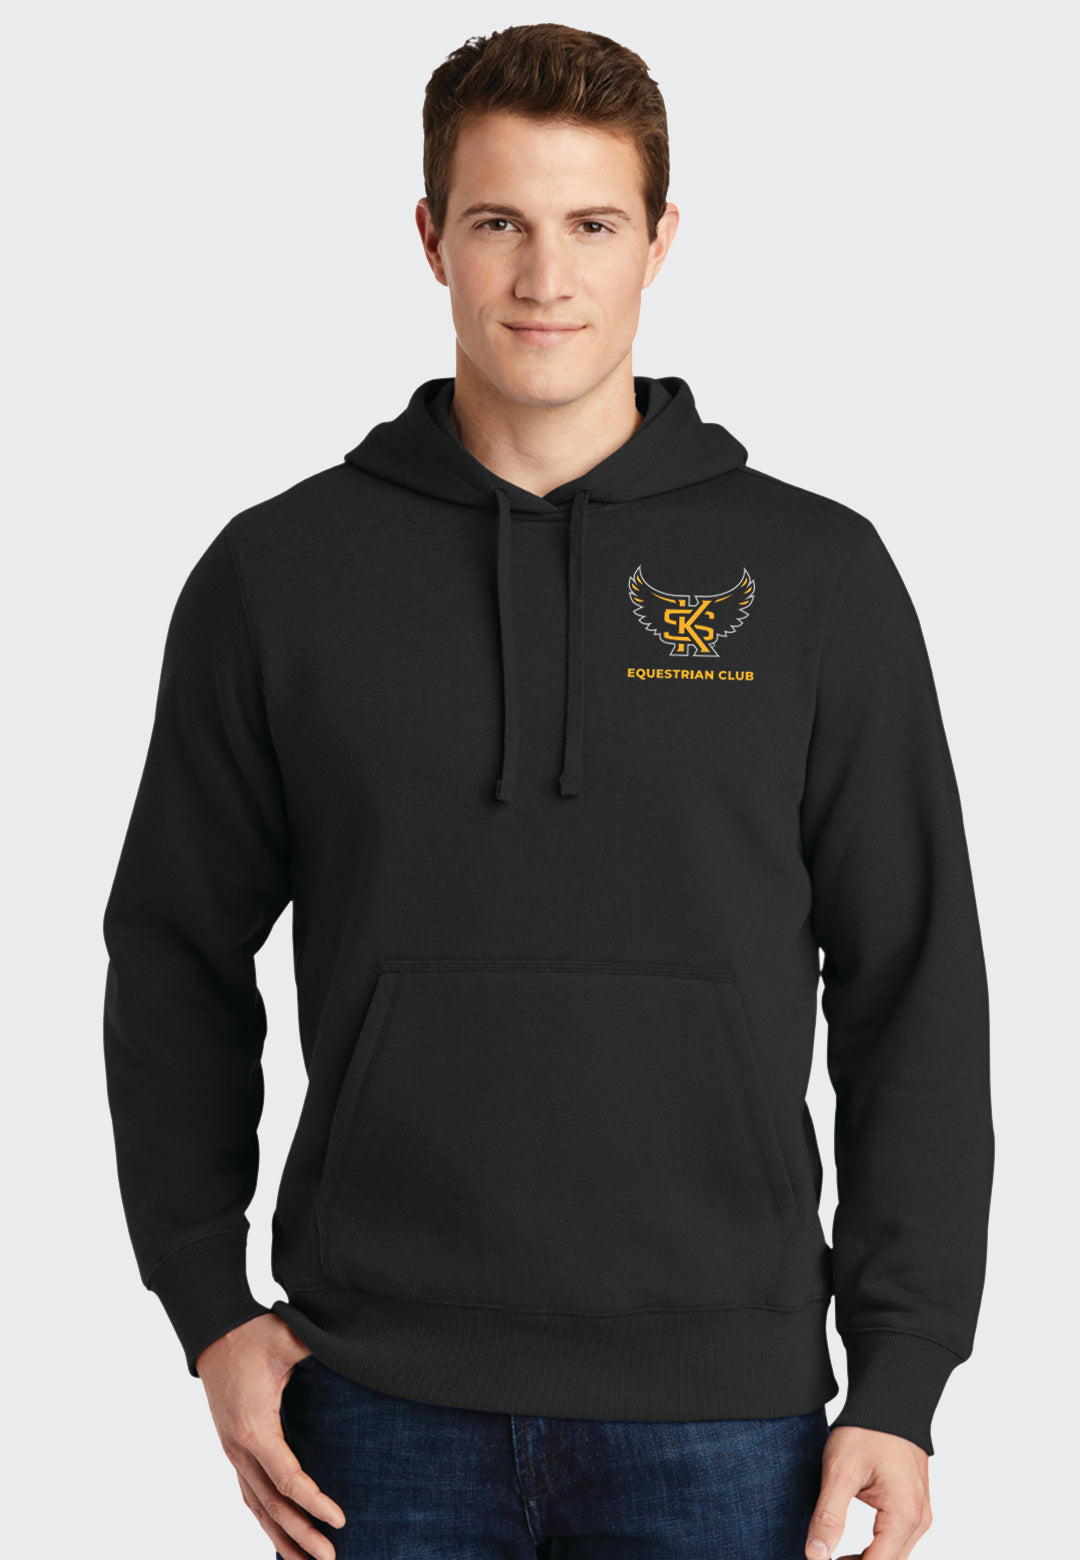 KSU Equestrian Team Sport-Tek® Hooded Sweatshirt - Ladies/Mens Sizes